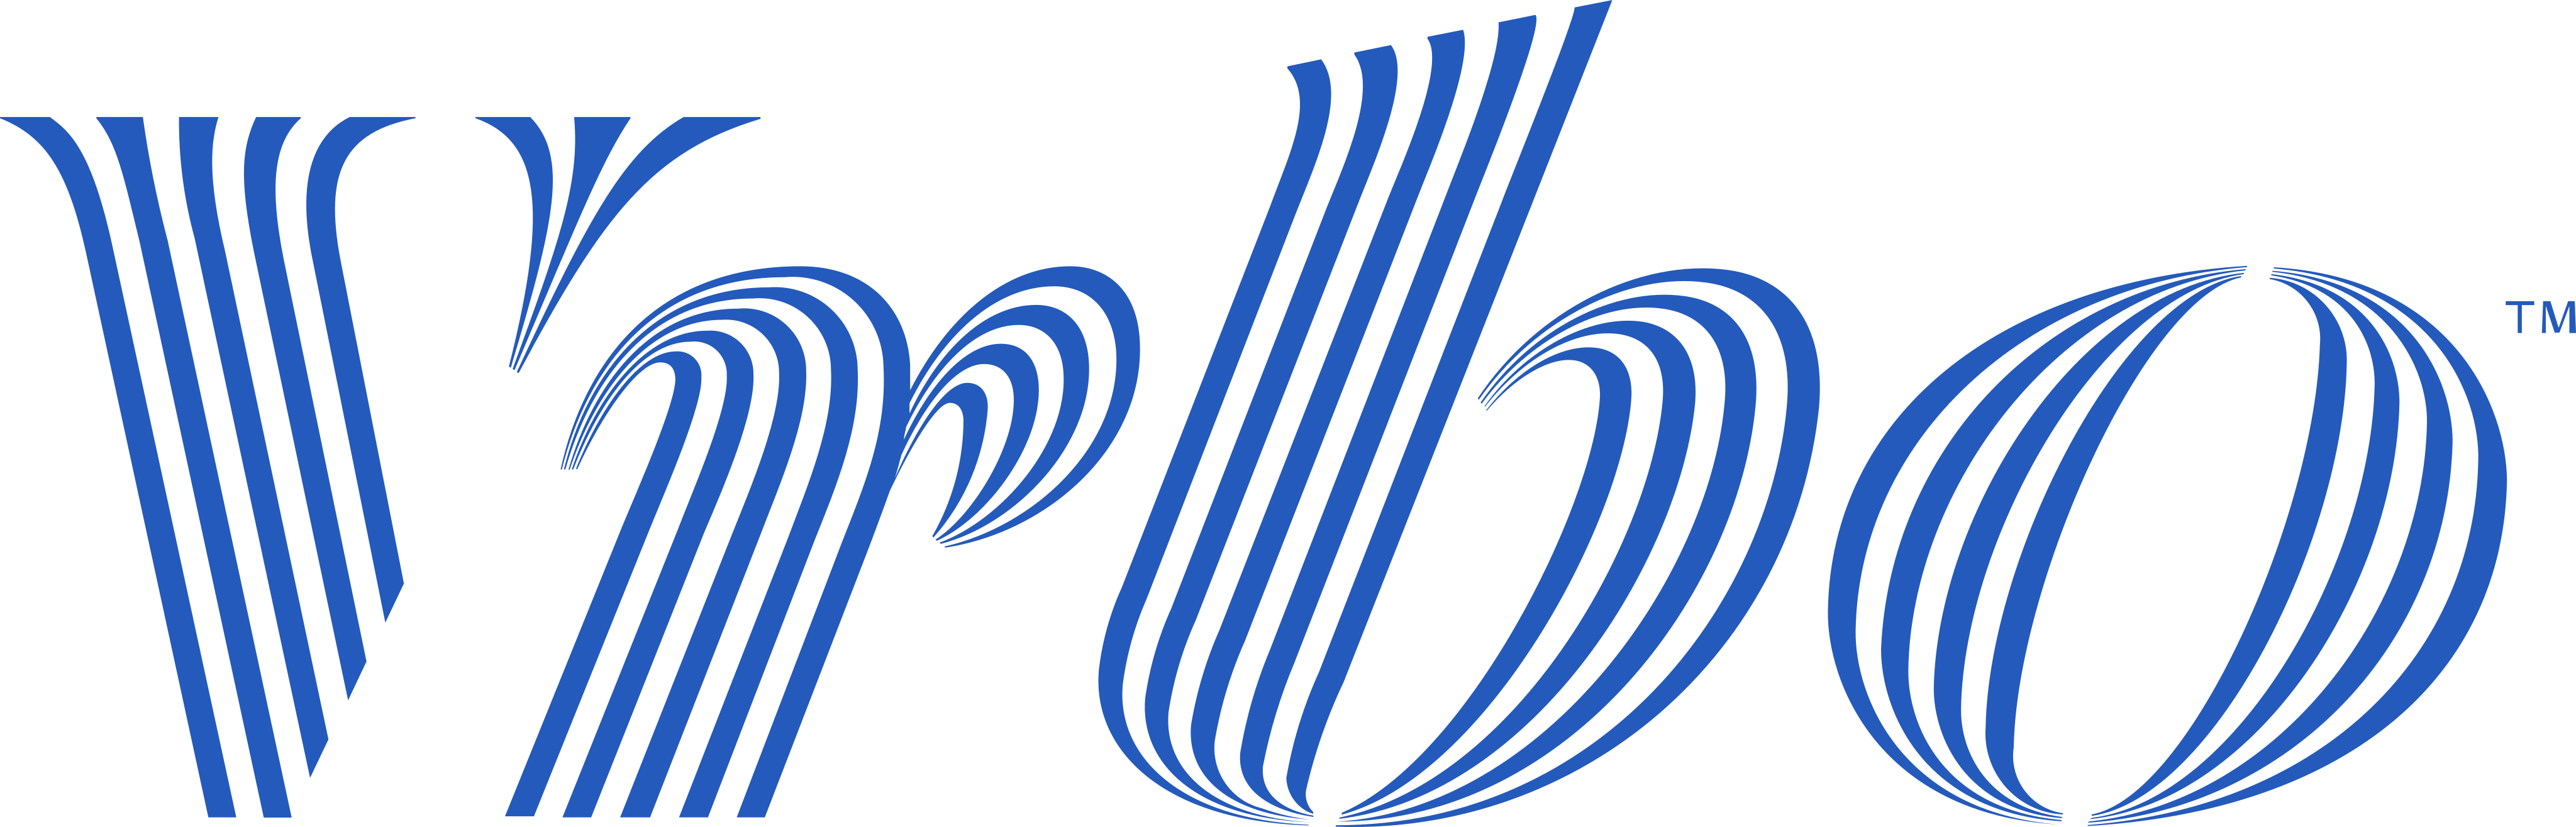 Логотип Vrbo